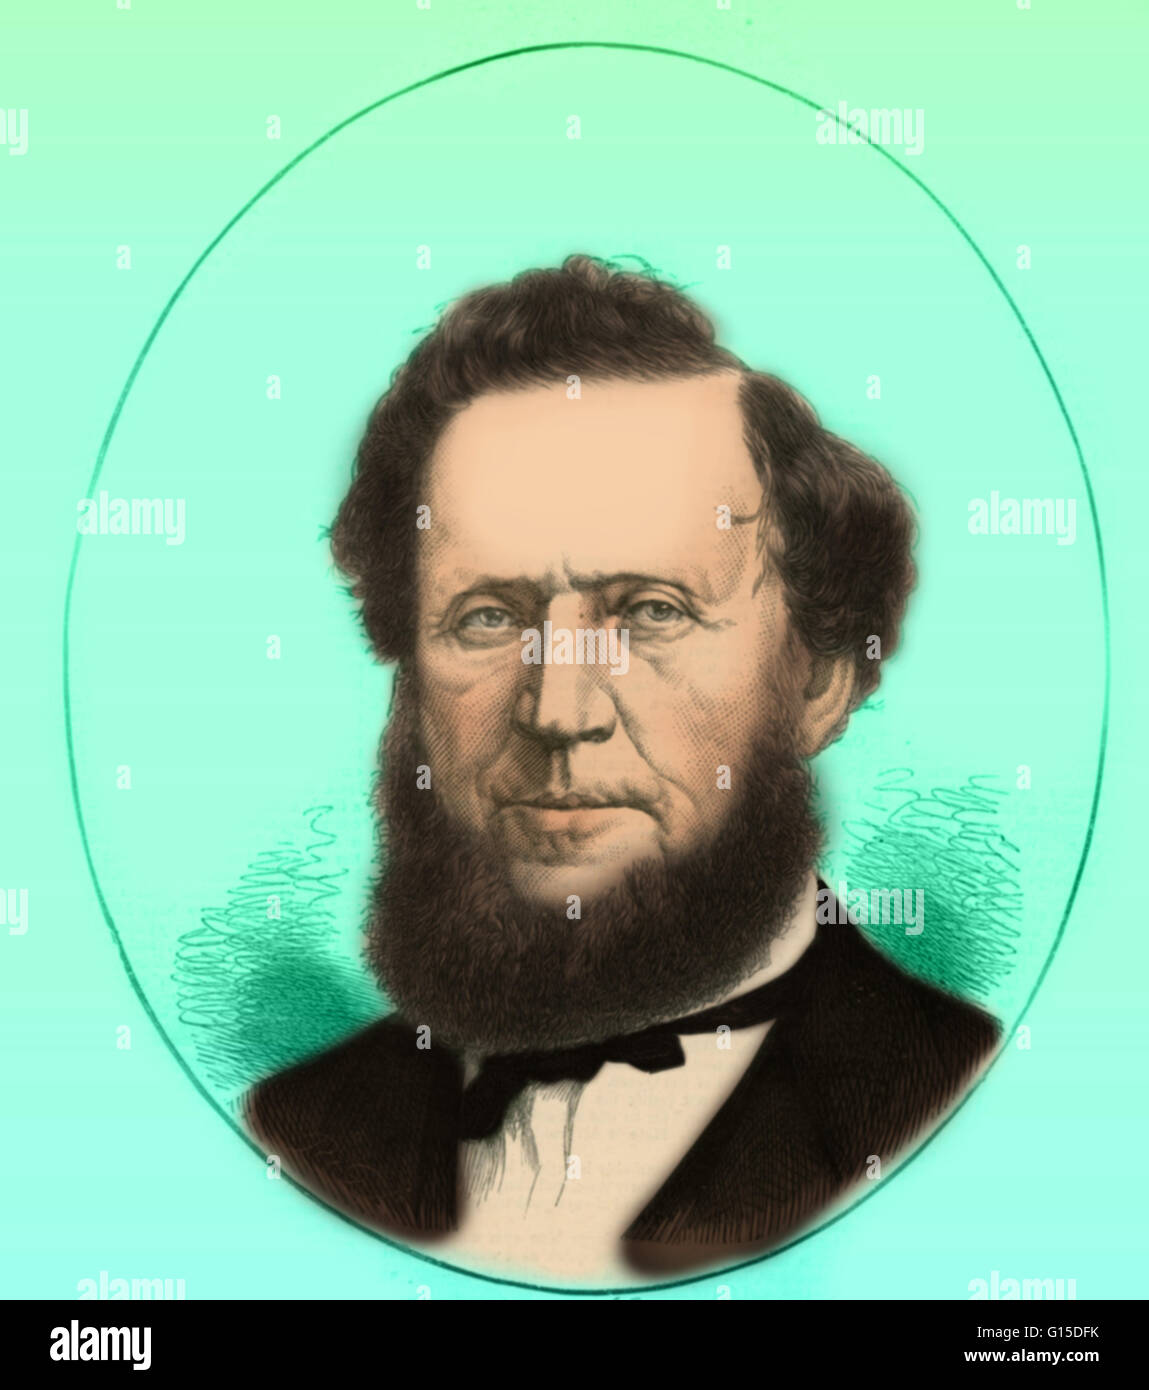 La Brigham Young (1 giugno 1801 - 29 agosto 1877) era un leader americano in quest'ultimo giorno San movimento e un decantatore dell'Ovest degli Stati Uniti. Egli è stato disegnato per Mormonism dopo la lettura del Libro di Mormon poco dopo la sua pubblicazione nel 1830. Egli officia Foto Stock